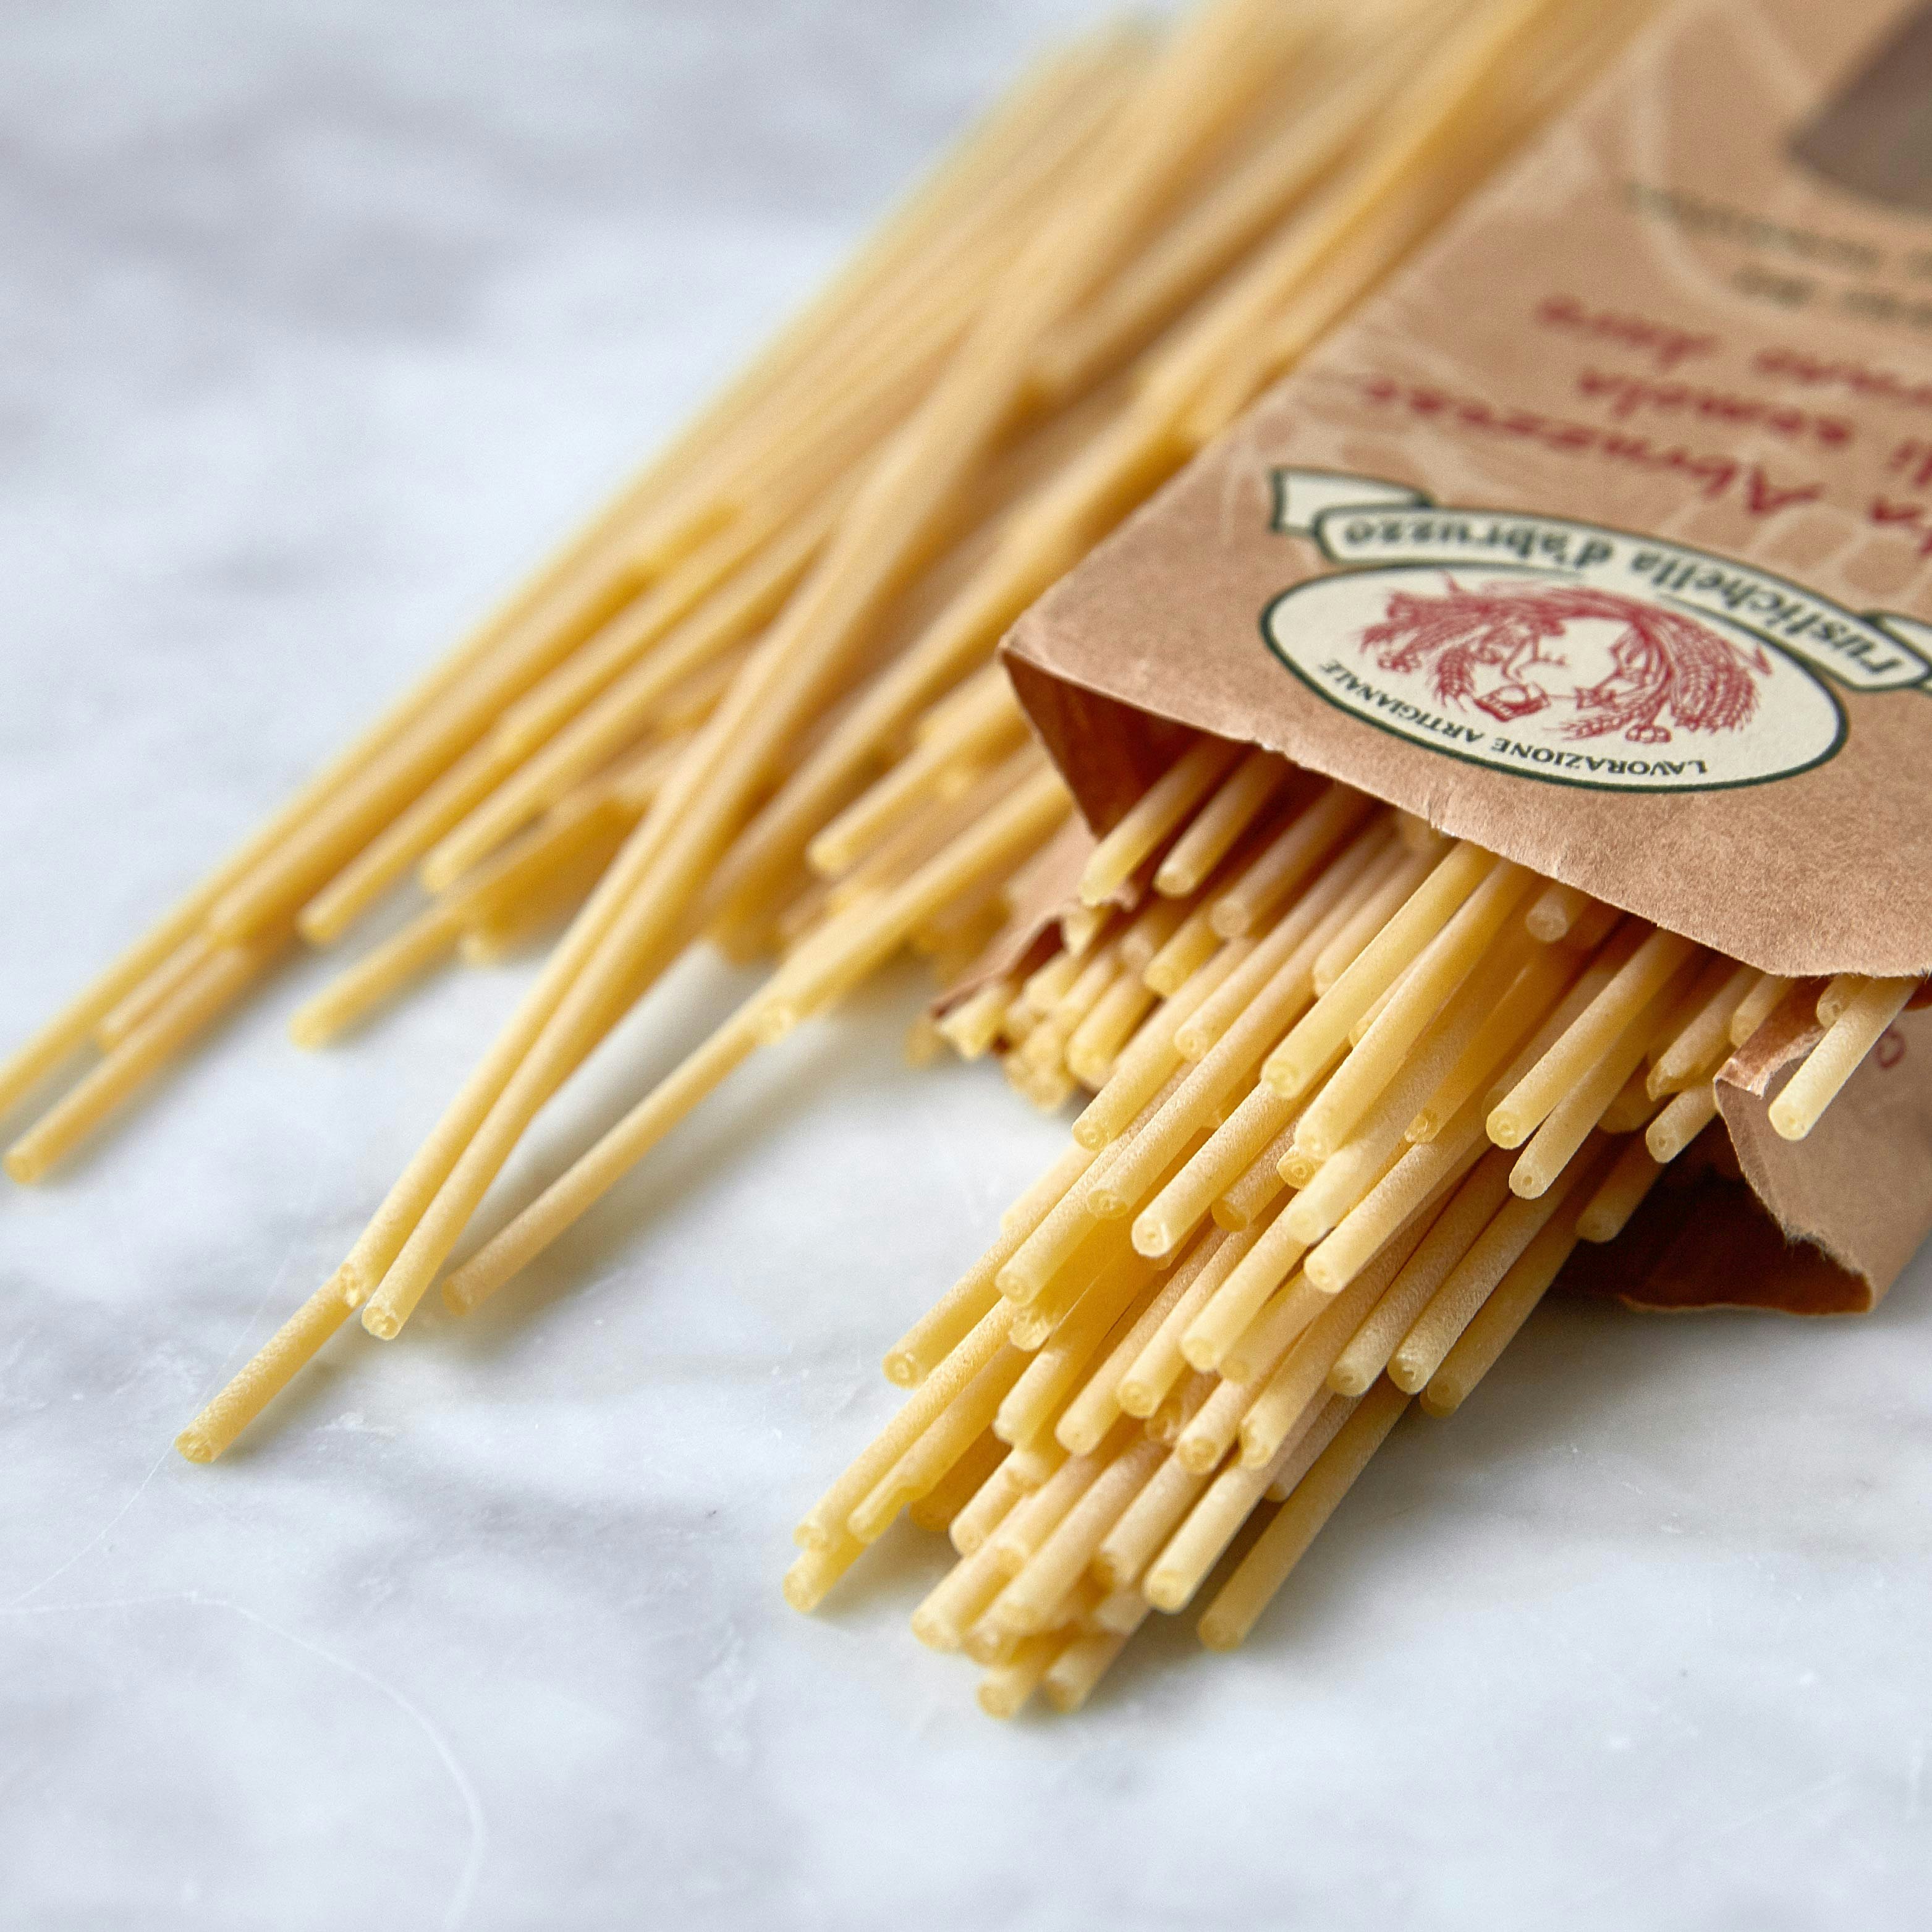 rustichella pasta bucatini specialty foods